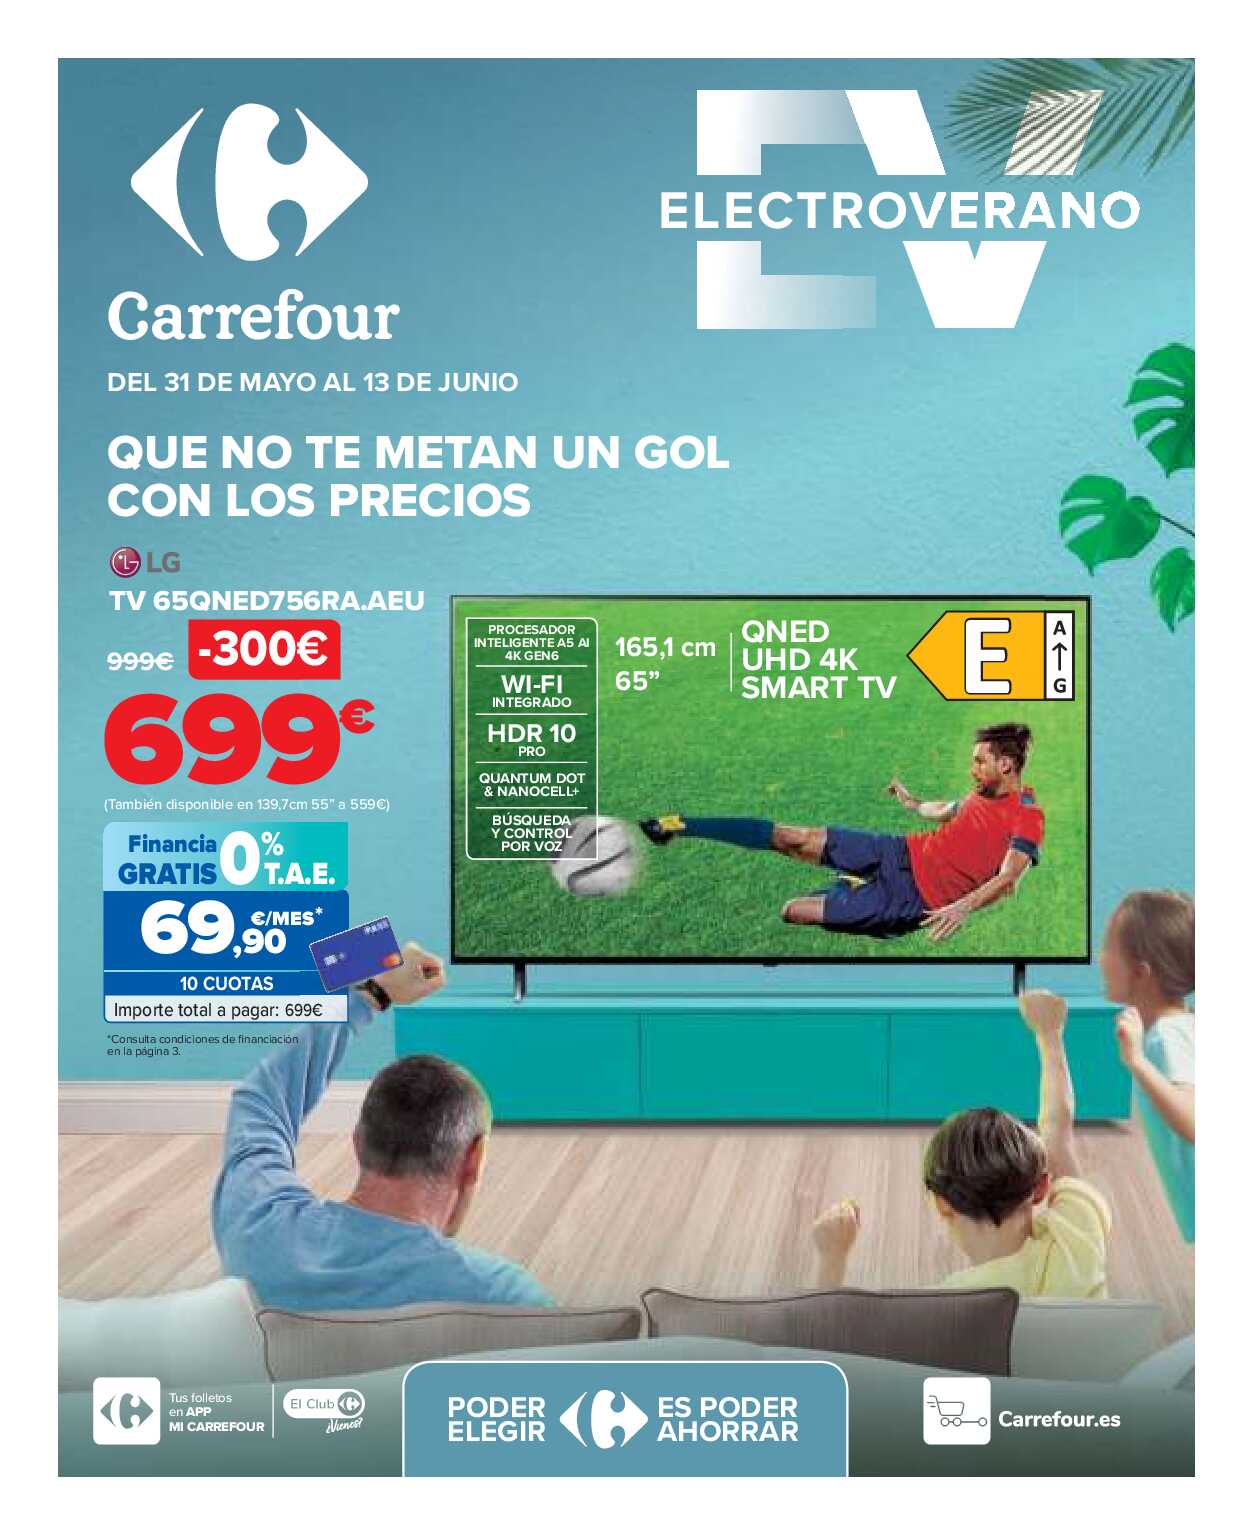 Electro verano Carrefour. Página 01